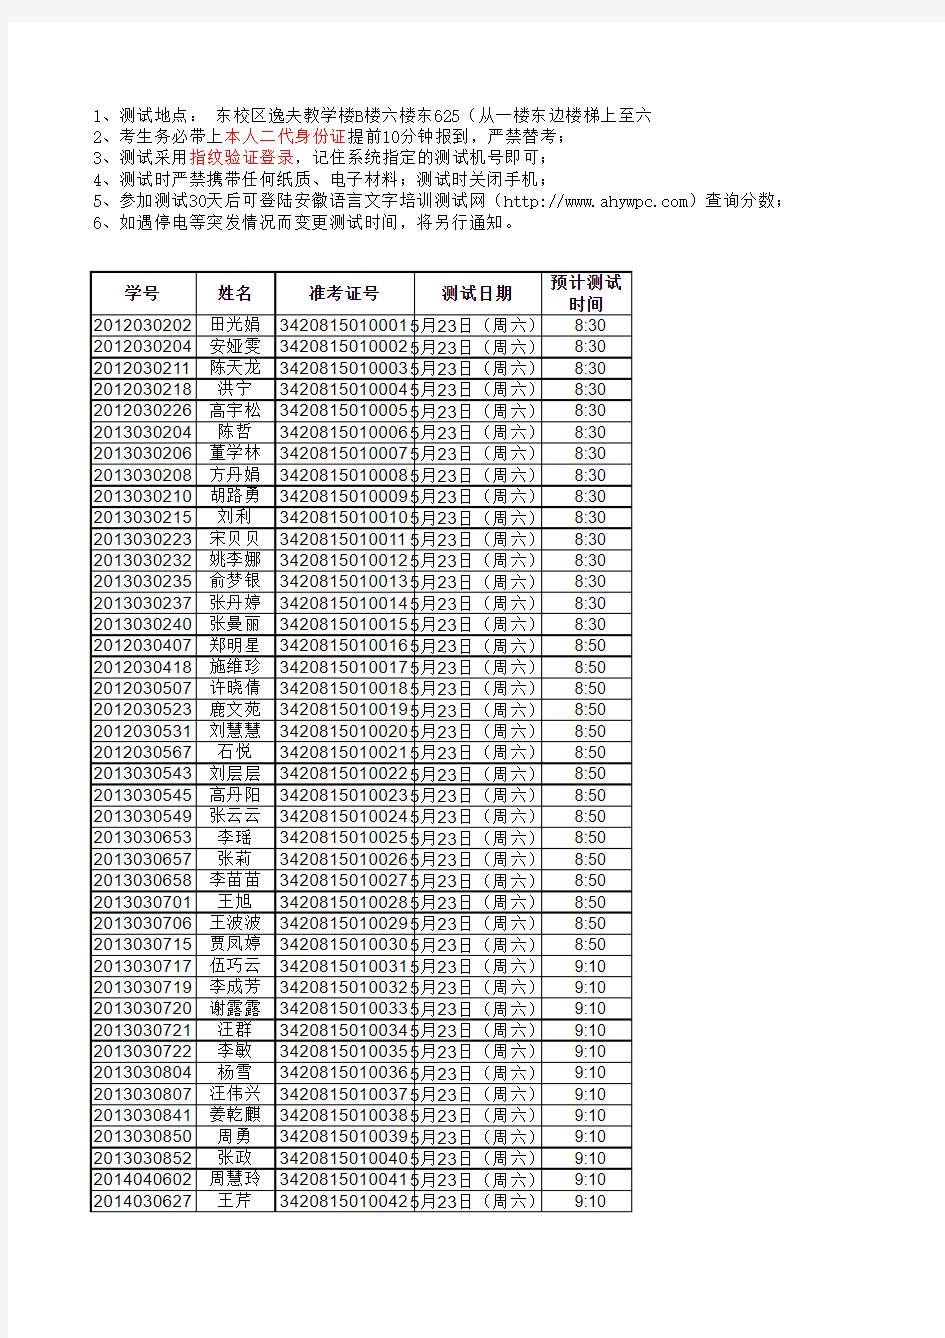 2015年上半年普通话水平测试日程表